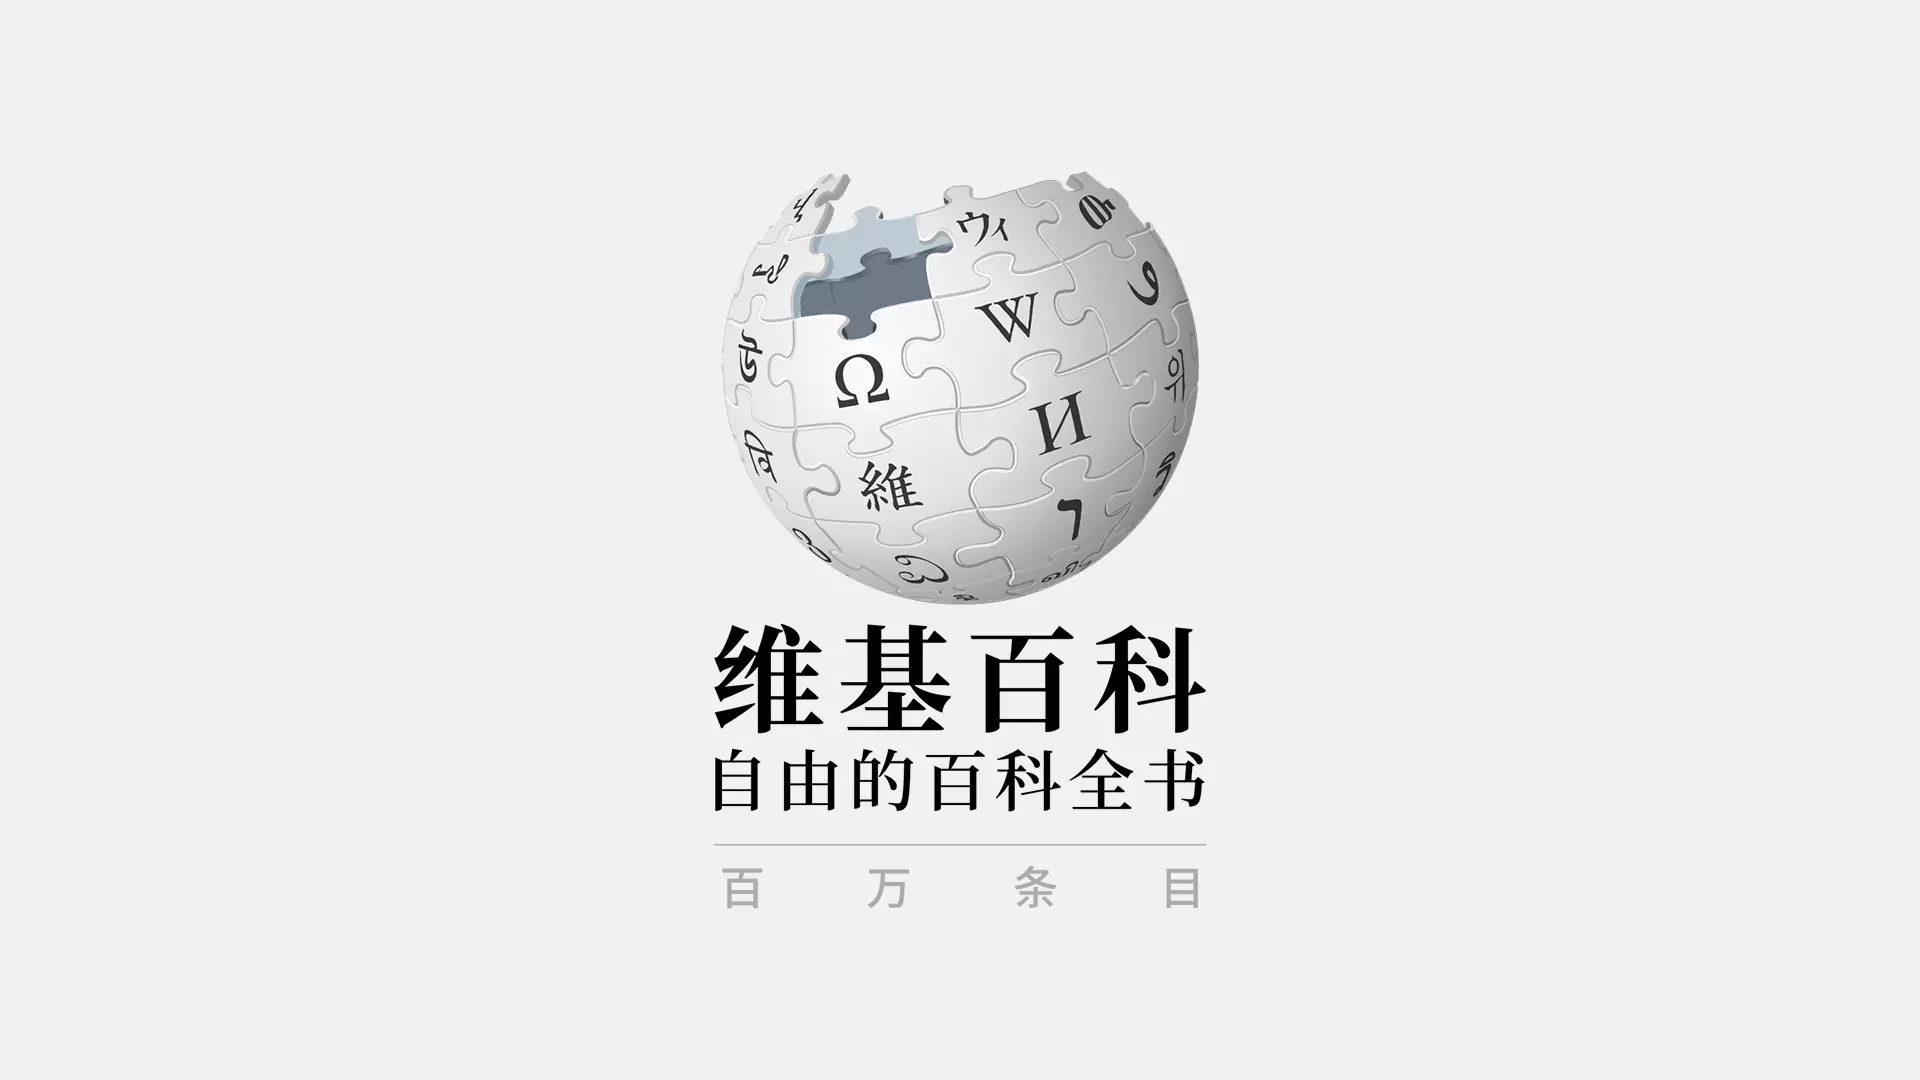 Mlito | 维基百科推出中国春节「鼠形拼图」主题LOGO image